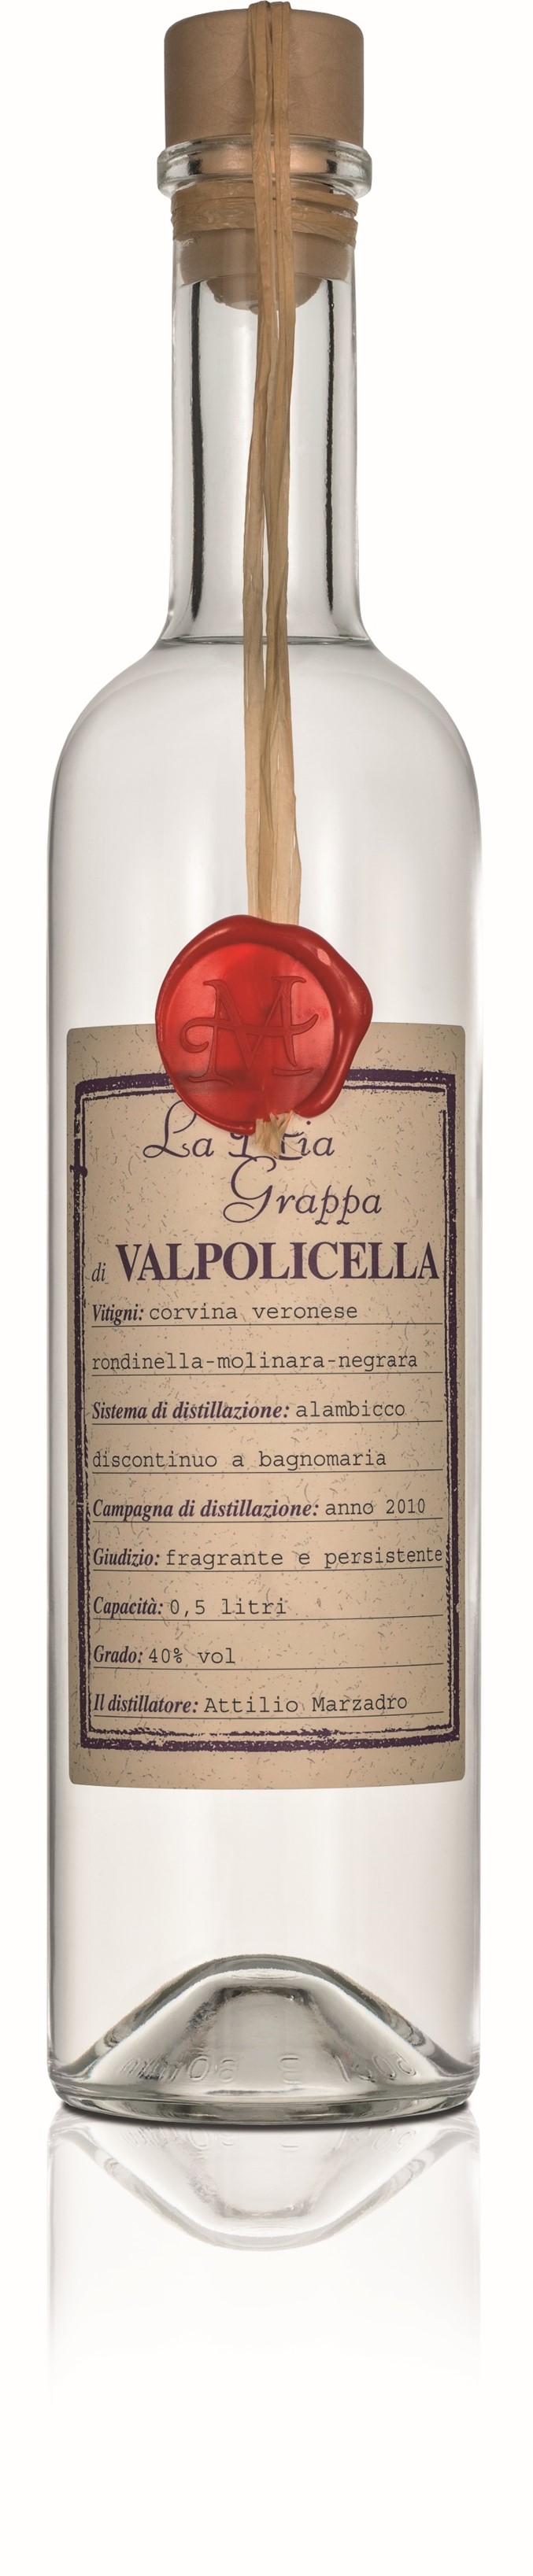 La Mia Grappa | di Italia Valpolicella Marzadro | Vino 0,5l 40